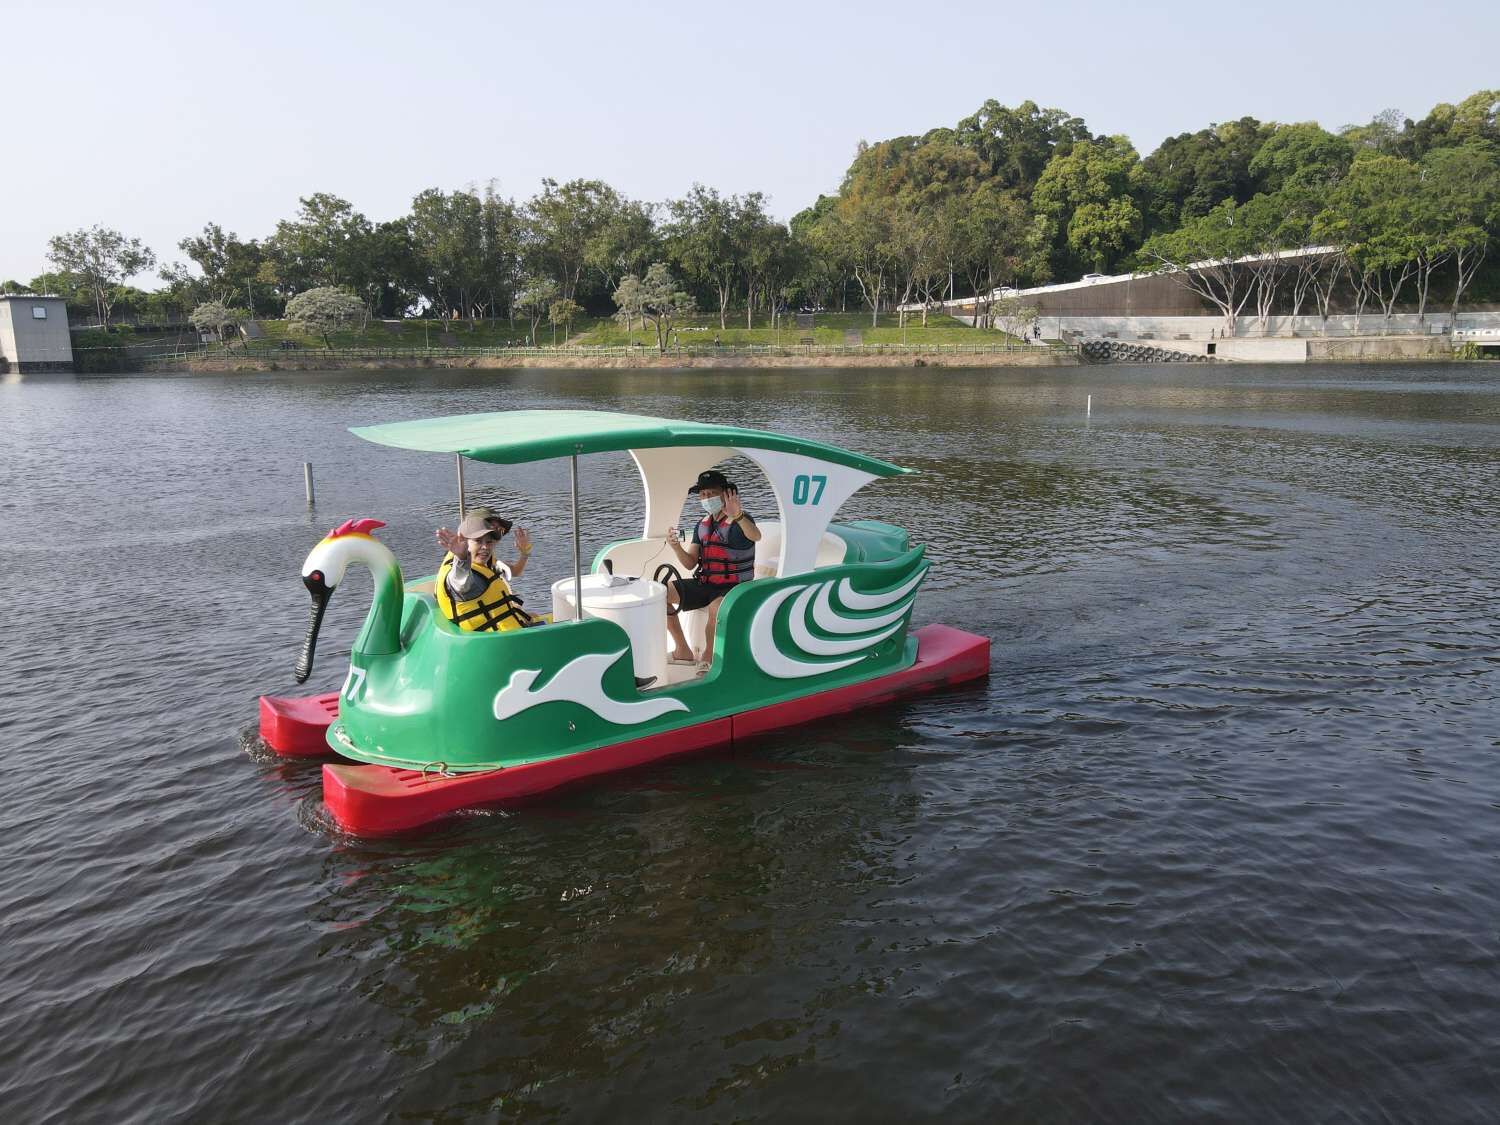 竹市青草湖水上活動4月26日重新開放 平日搭乘天鵝船享補助優惠